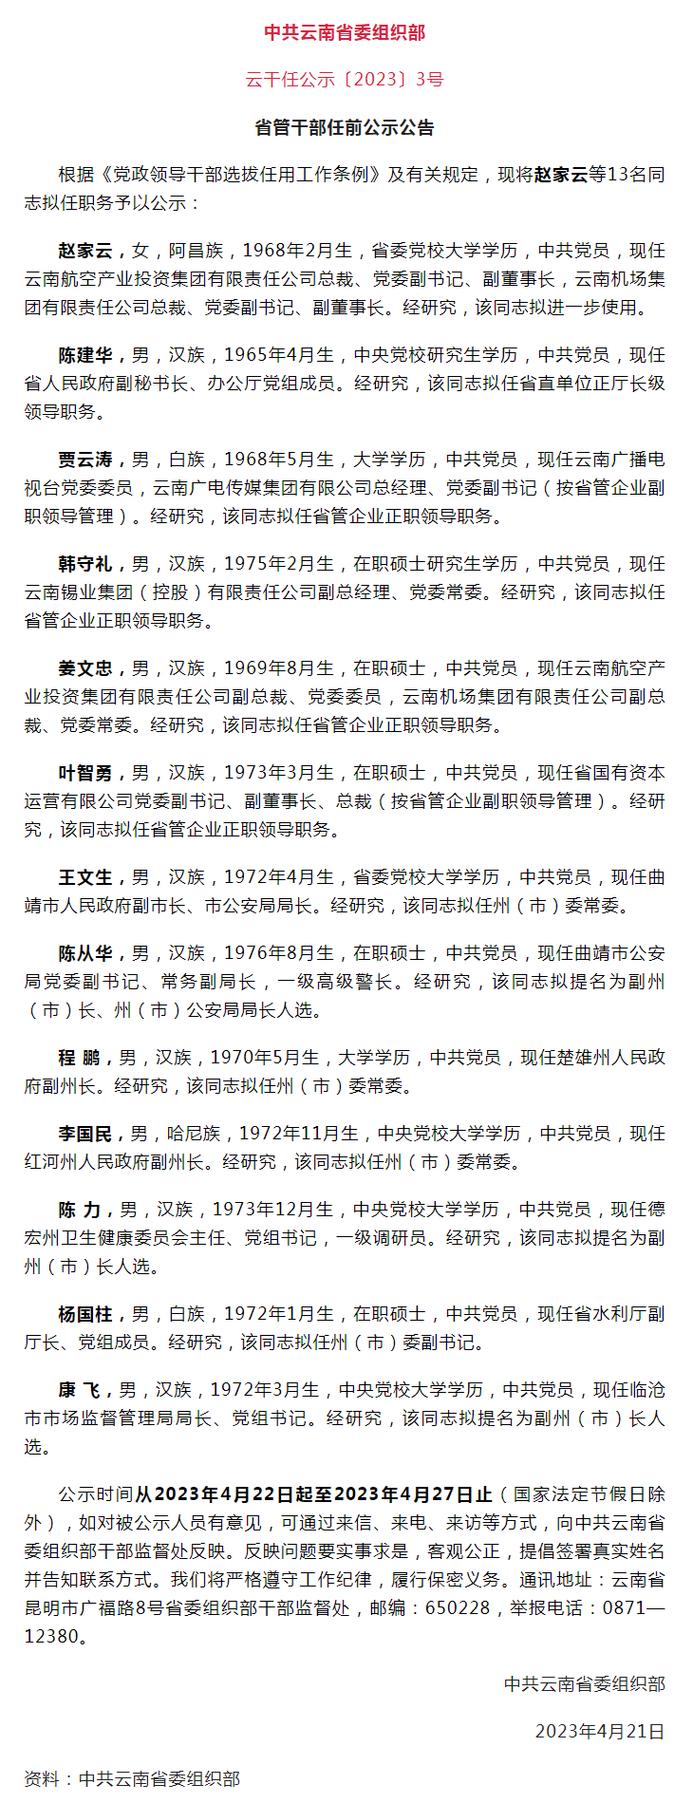 云南省发布省管干部任前公示公告